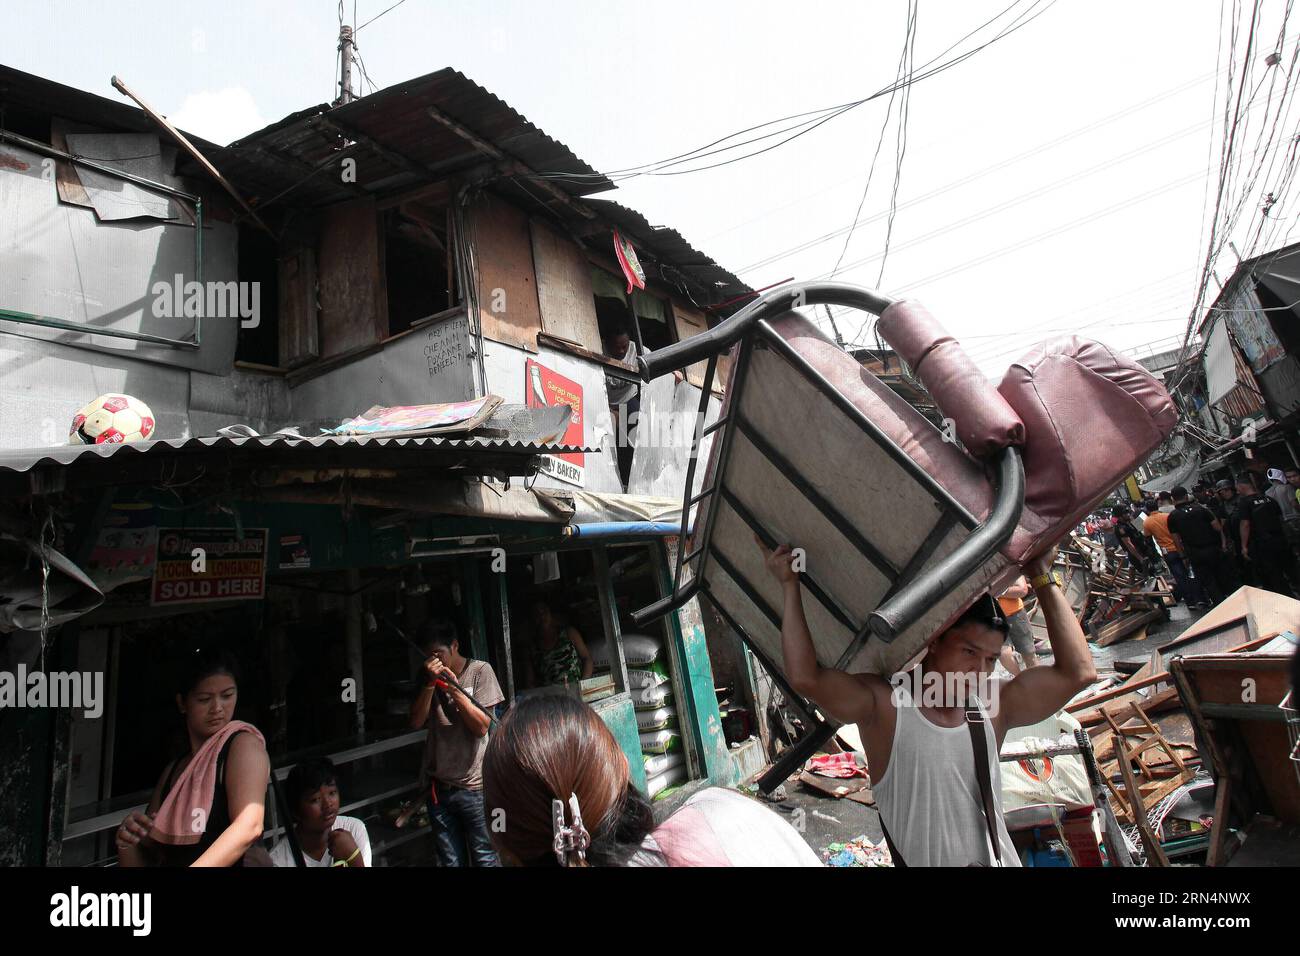 AKTUELLES ZEITGESCHEHEN Philippinen: Ausschreitungen bei Räumung und Abriss eines Armenviertels (150526) -- CITTÀ DI CALOOCAN, 26 maggio 2015 -- i residenti evacuano con i loro effetti personali mentre le squadre di demolizione smontano le baraccopoli nella città di Caloocan, Filippine, 26 maggio 2015. Quattro persone sono rimaste ferite mentre altre due sono state arrestate dopo che i residenti si sono scontrati con le autorità. 500 famiglie sono state lasciate senza tetto nella demolizione della zona baraccopoli. ) FILIPPINE-CALOOCAN CITY-SLUM AREA DEMOLITION RouellexUmali PUBLICATIONxNOTxINxCHN News eventi attuali Filippine Riots at Clearance and Demolition a Poor d Foto Stock